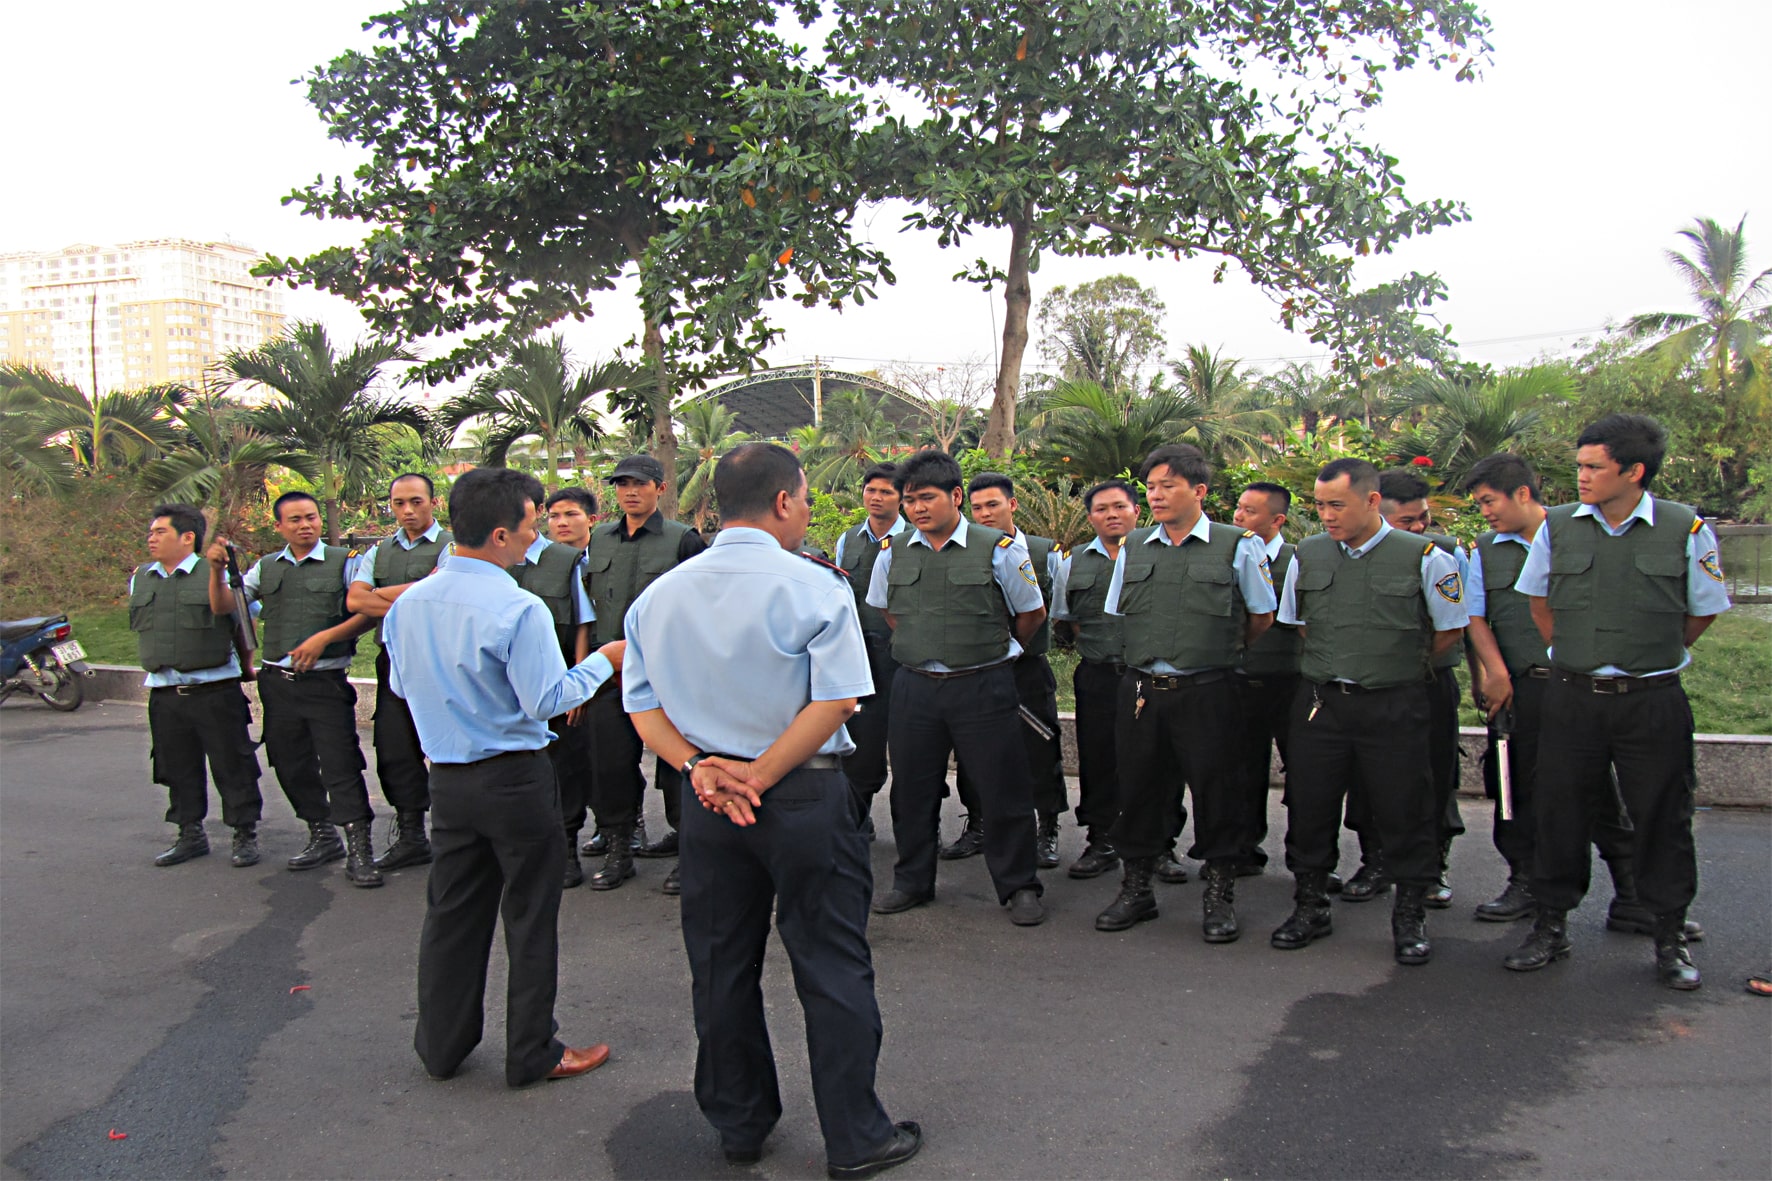 dịch vụ bảo vệ quận Gò Vấp Sài Gòn